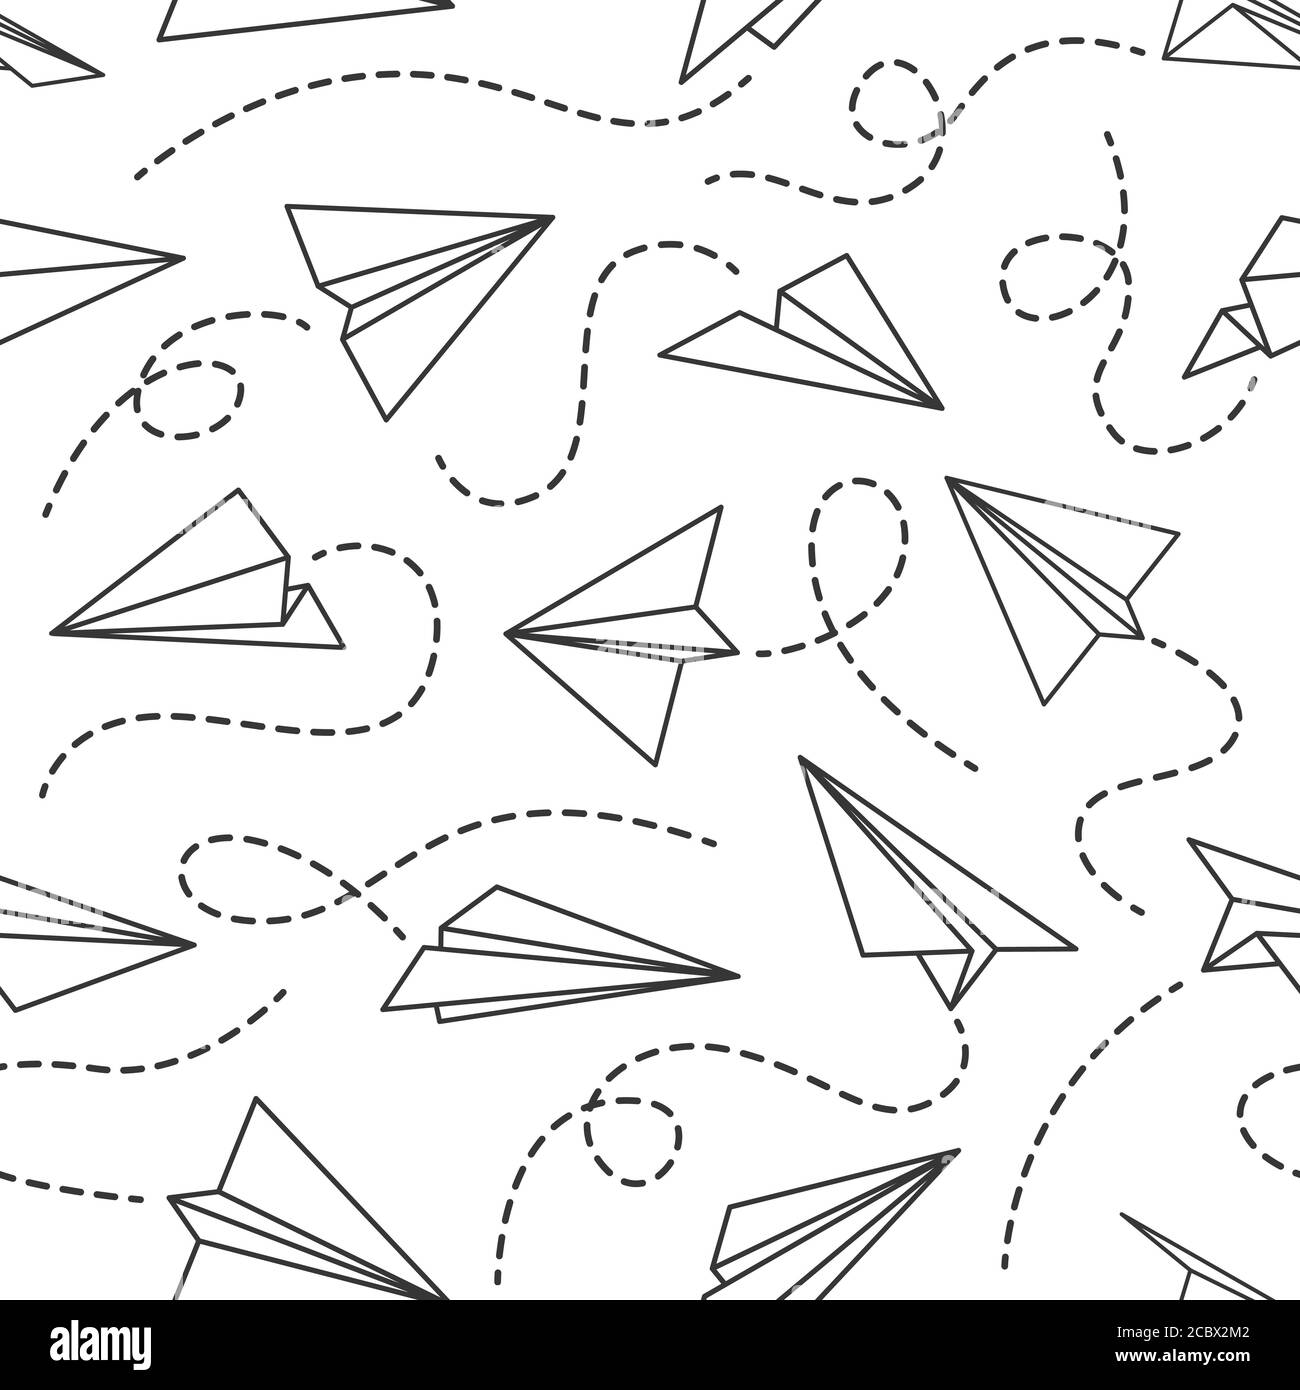 Linie Papier Flugzeug nahtlose Muster. Fliegende Ebenen aus verschiedenen Richtungen mit gepunkteten Linien Spuren, schwarze Zeichnung Tapete Vektor-Textur Stock Vektor